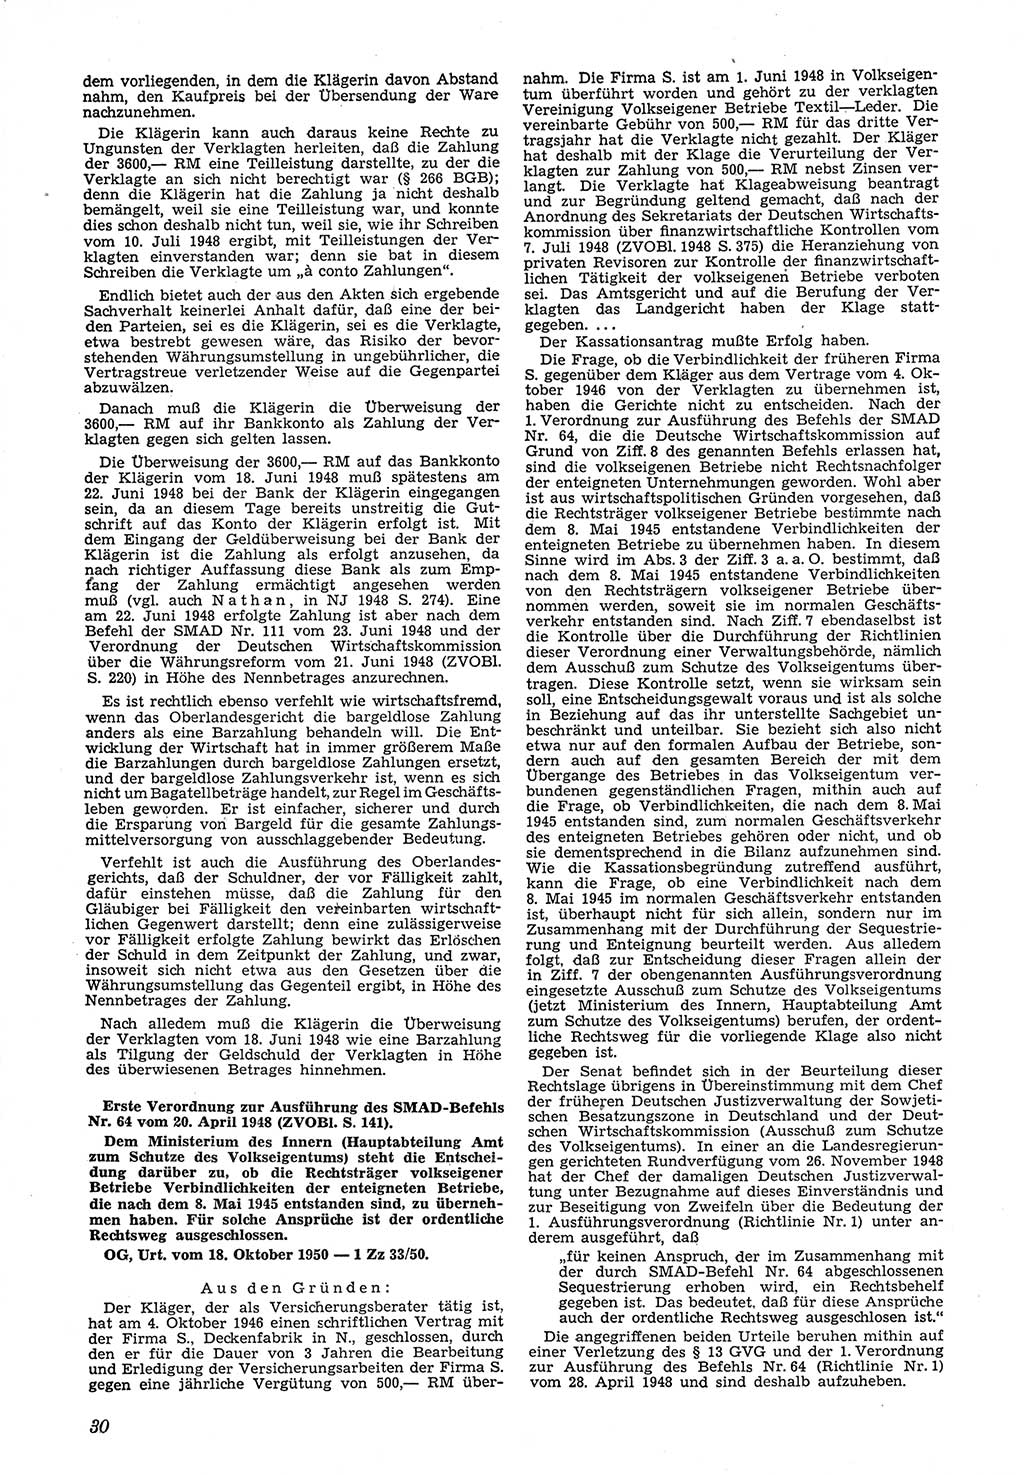 Neue Justiz (NJ), Zeitschrift für Recht und Rechtswissenschaft [Deutsche Demokratische Republik (DDR)], 5. Jahrgang 1951, Seite 30 (NJ DDR 1951, S. 30)